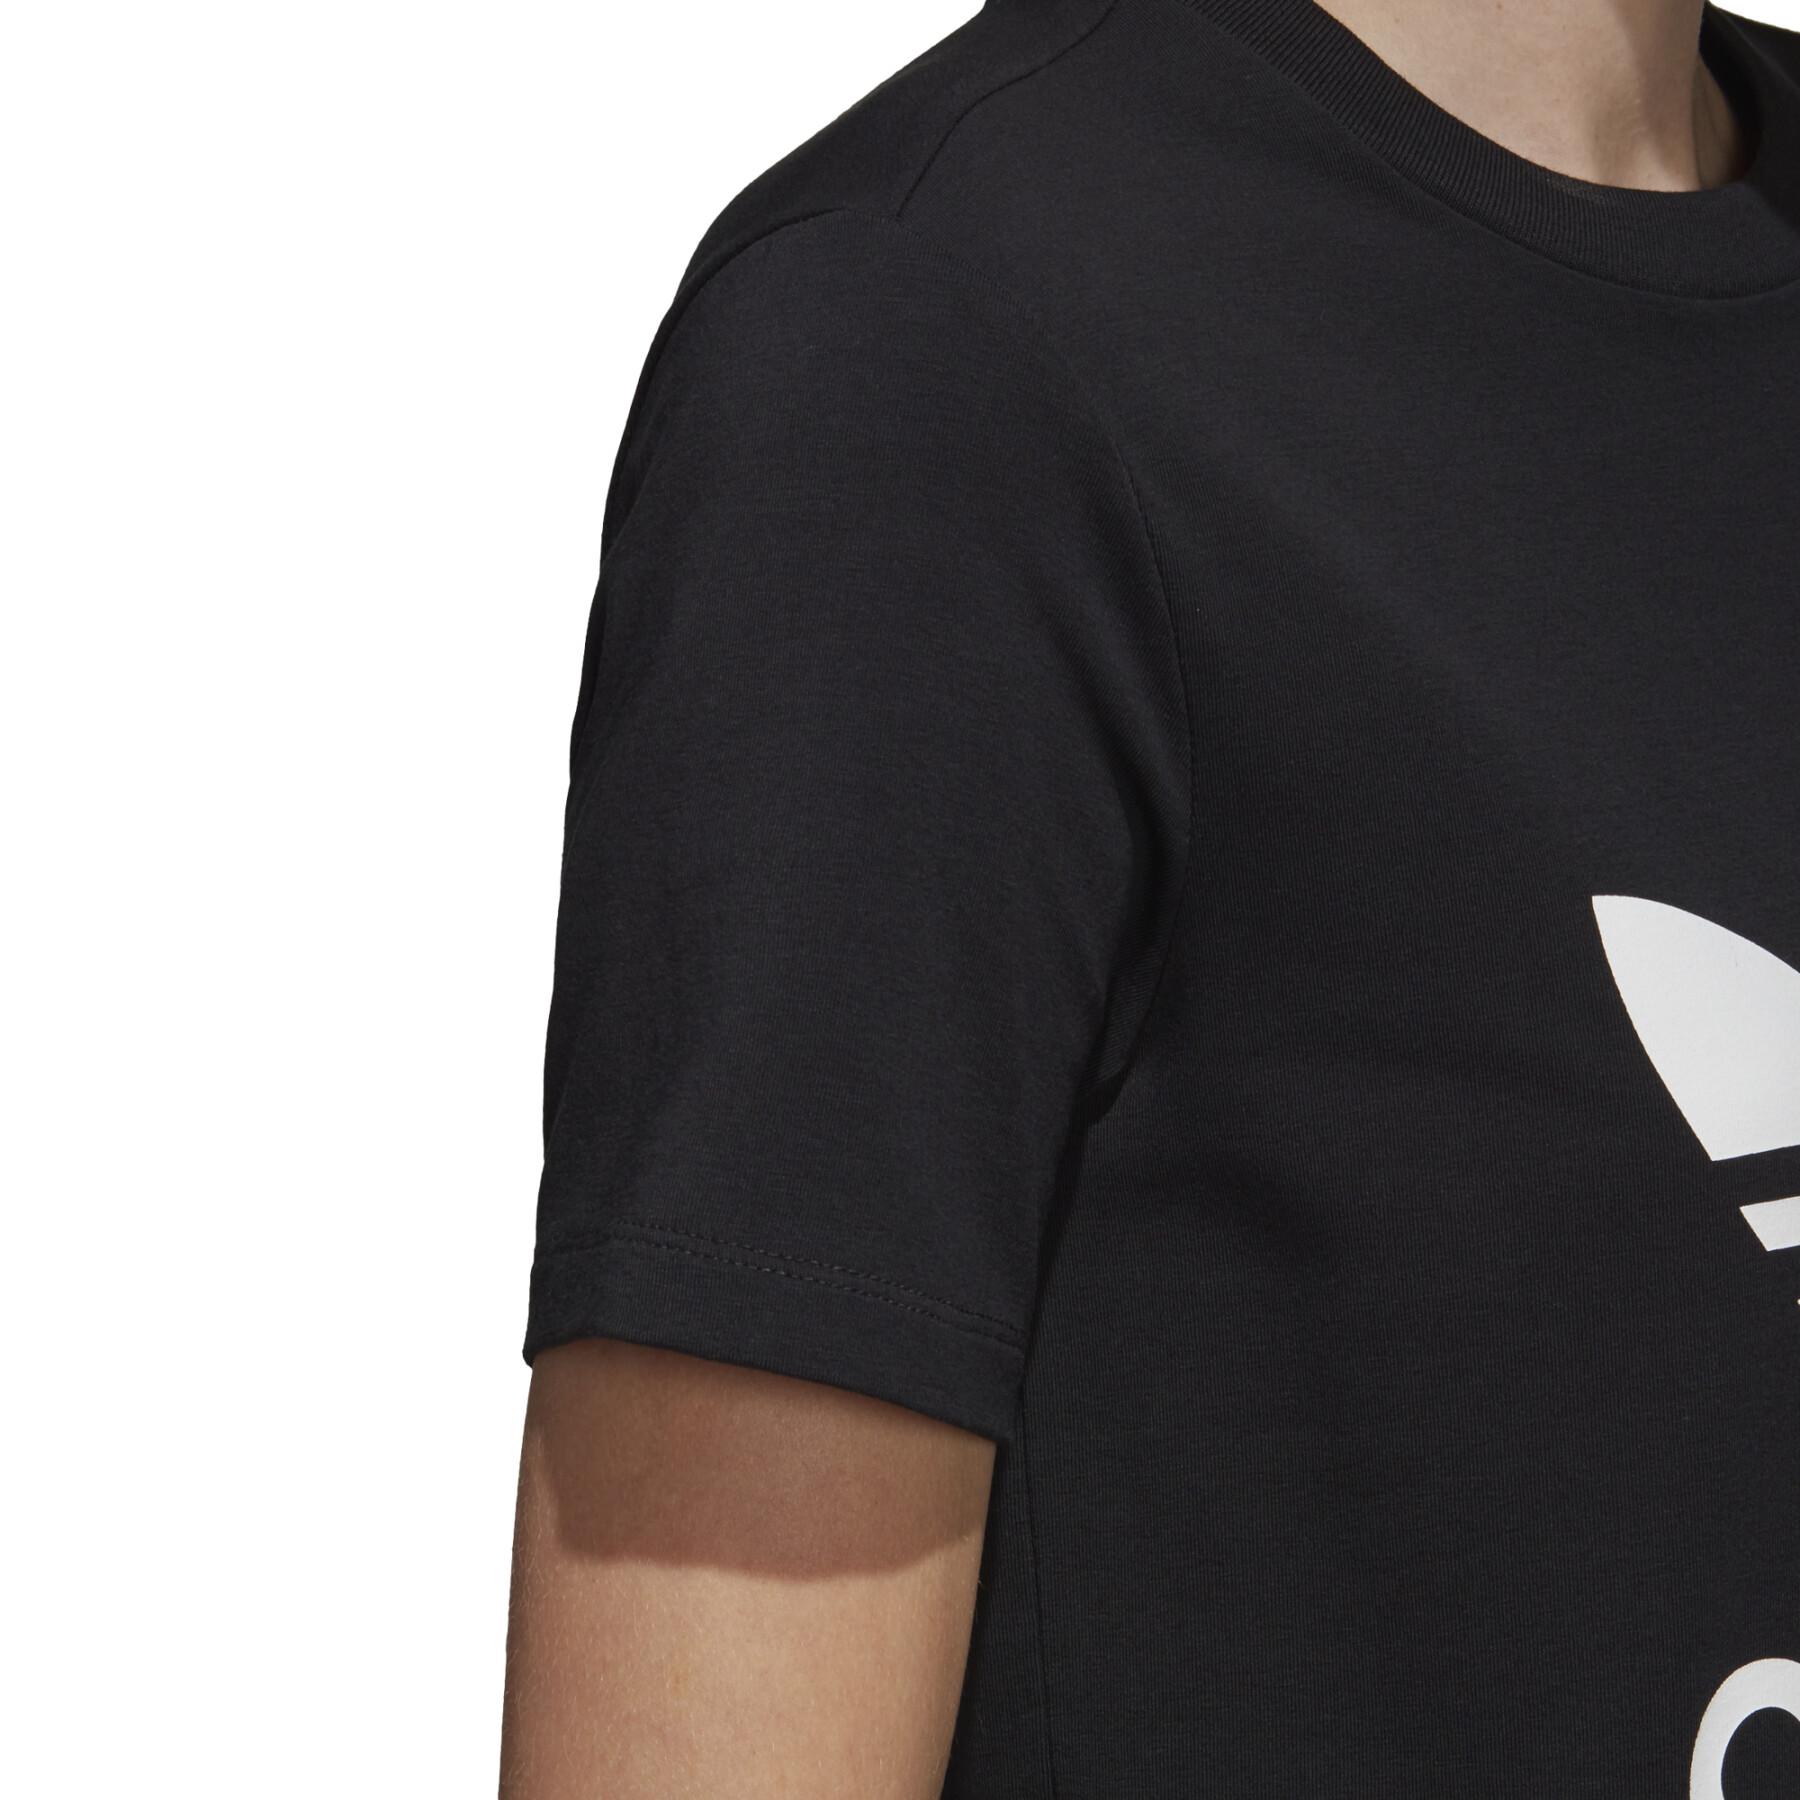 Koszulka damska adidas Trefoil maille jersey